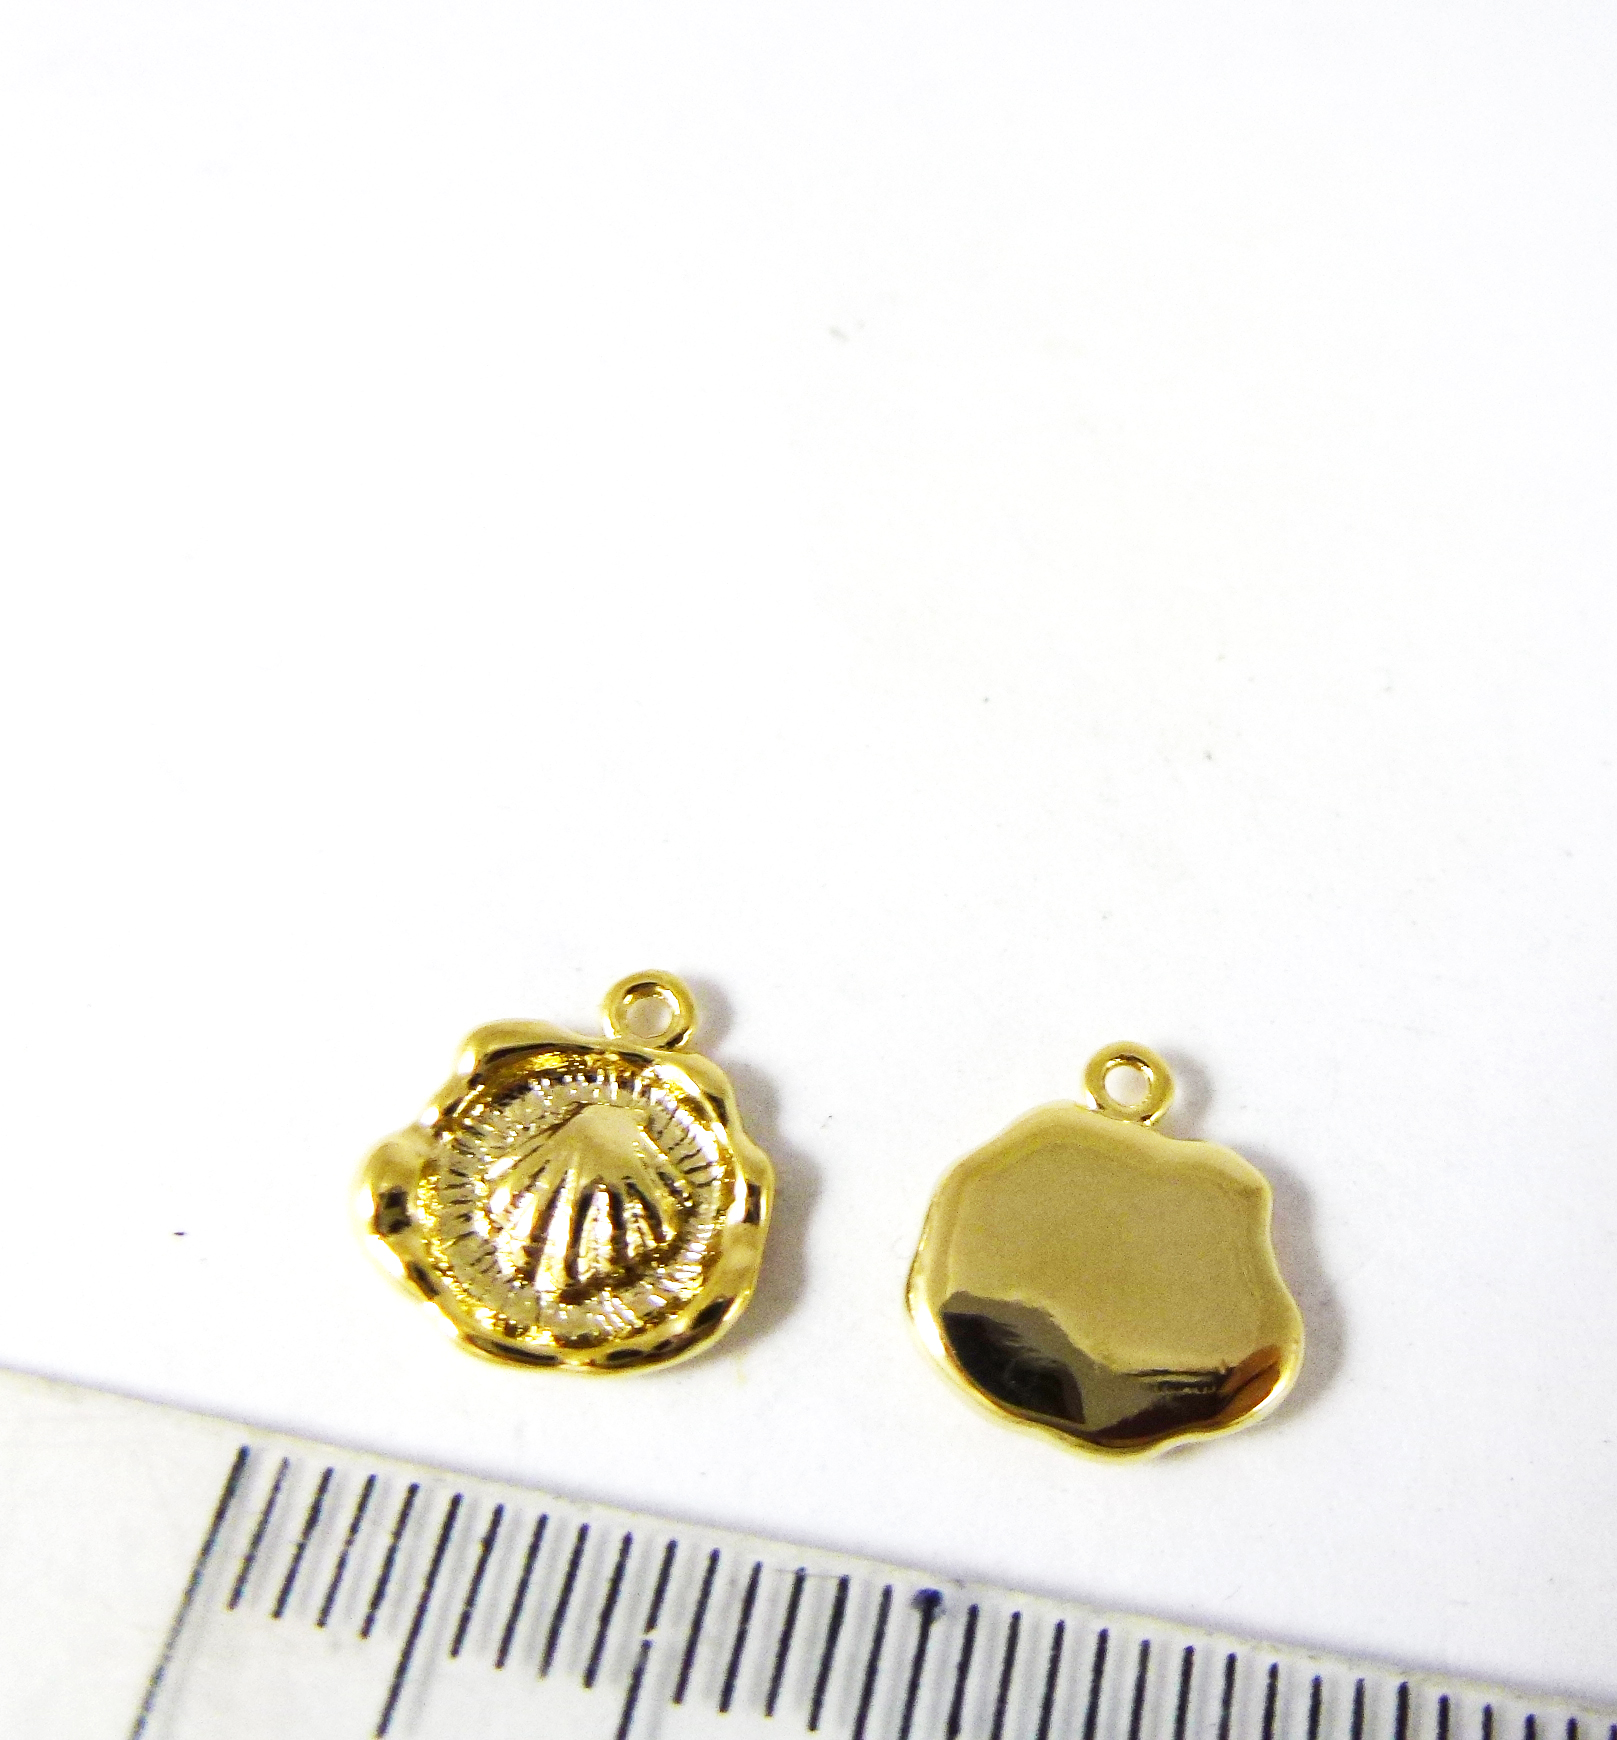 8mm銅鍍金色單孔平底小貝殼